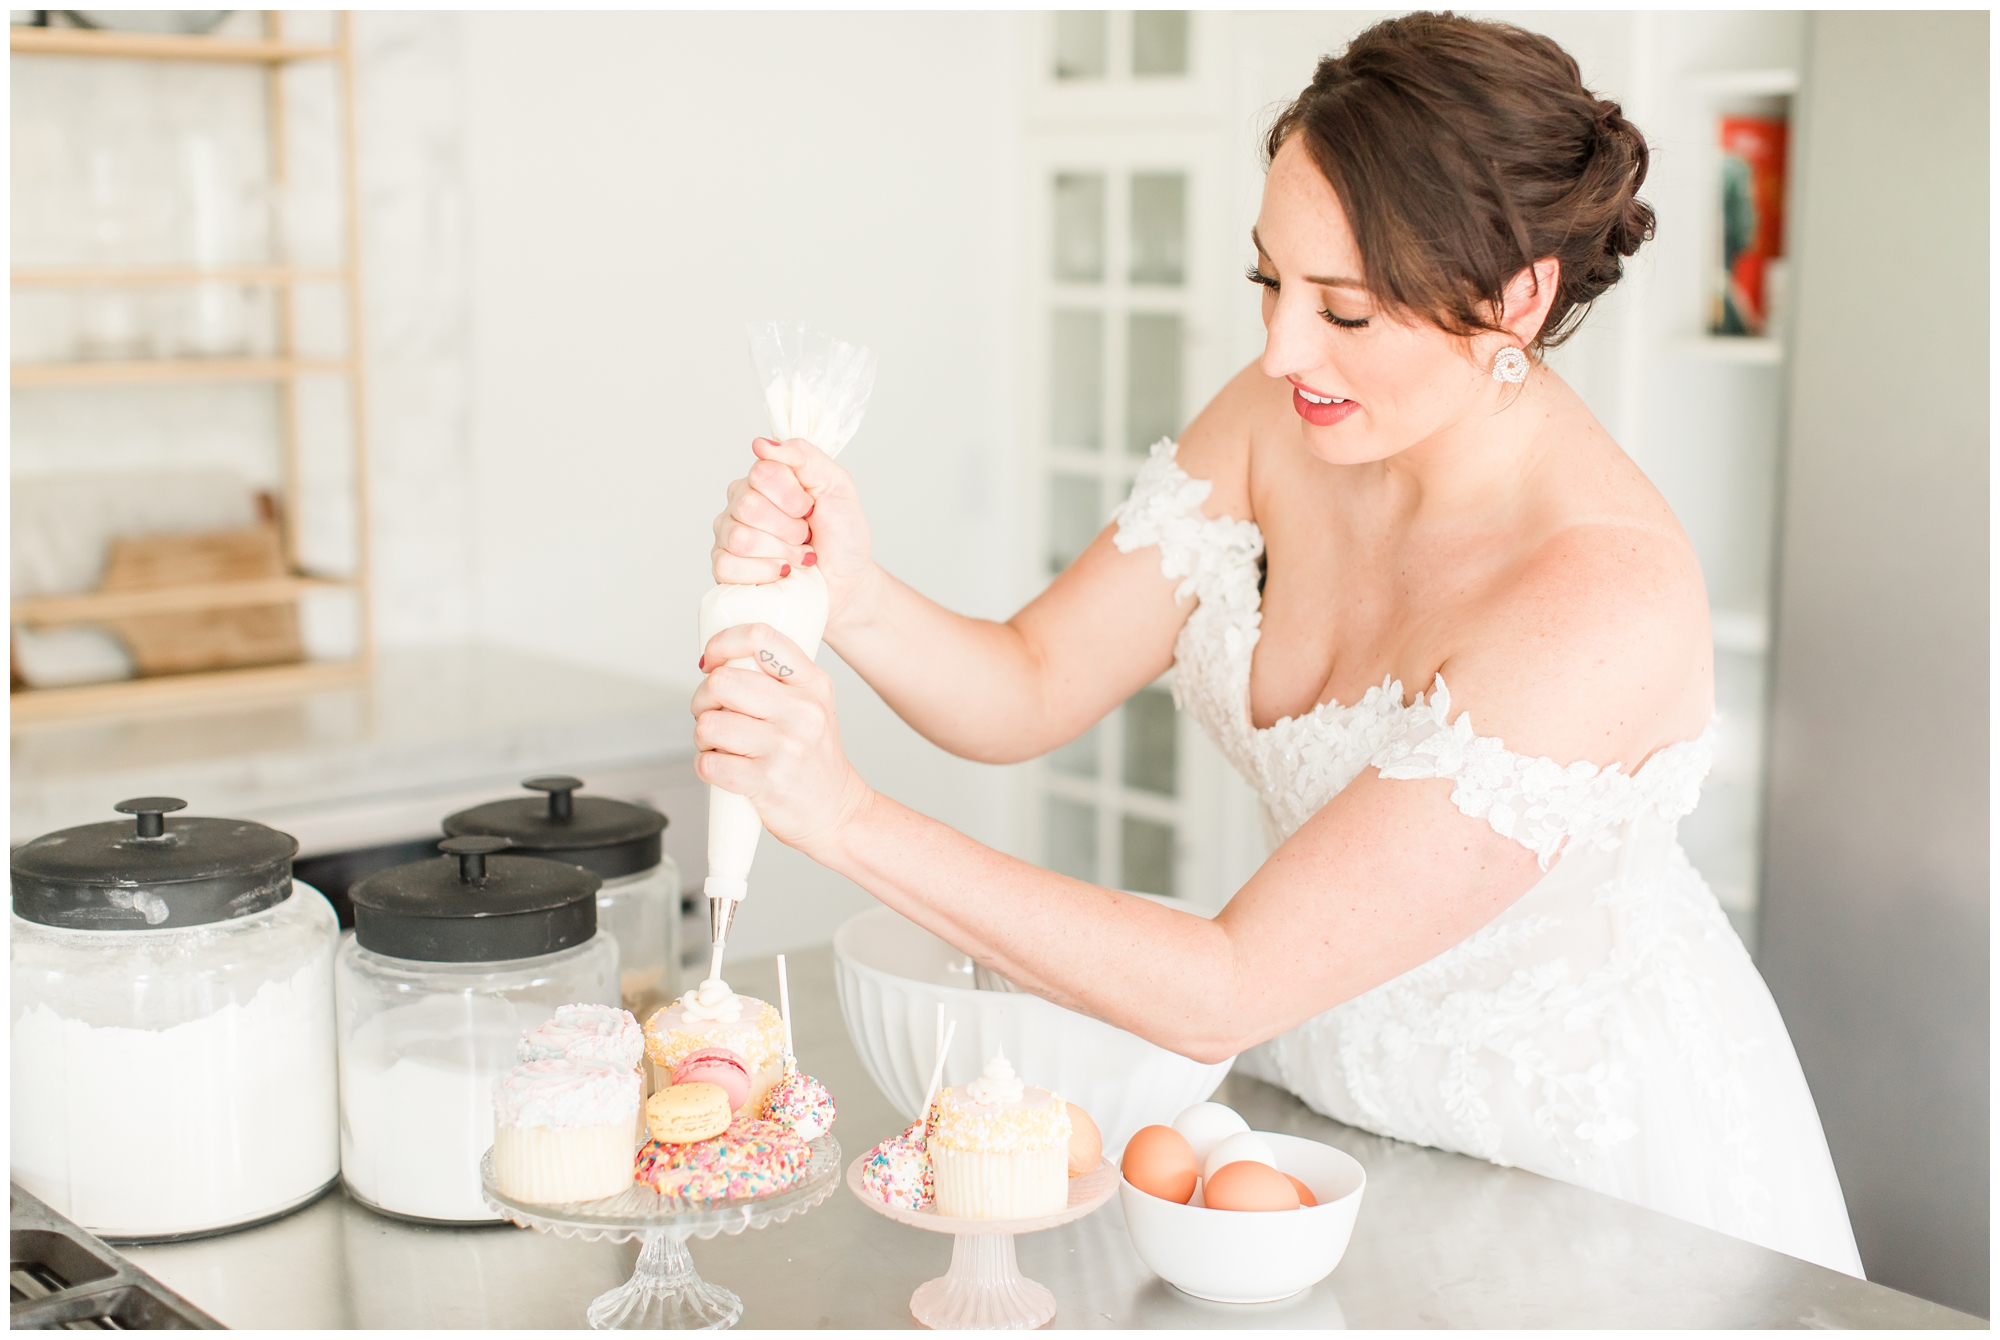 bride baking wedding cake